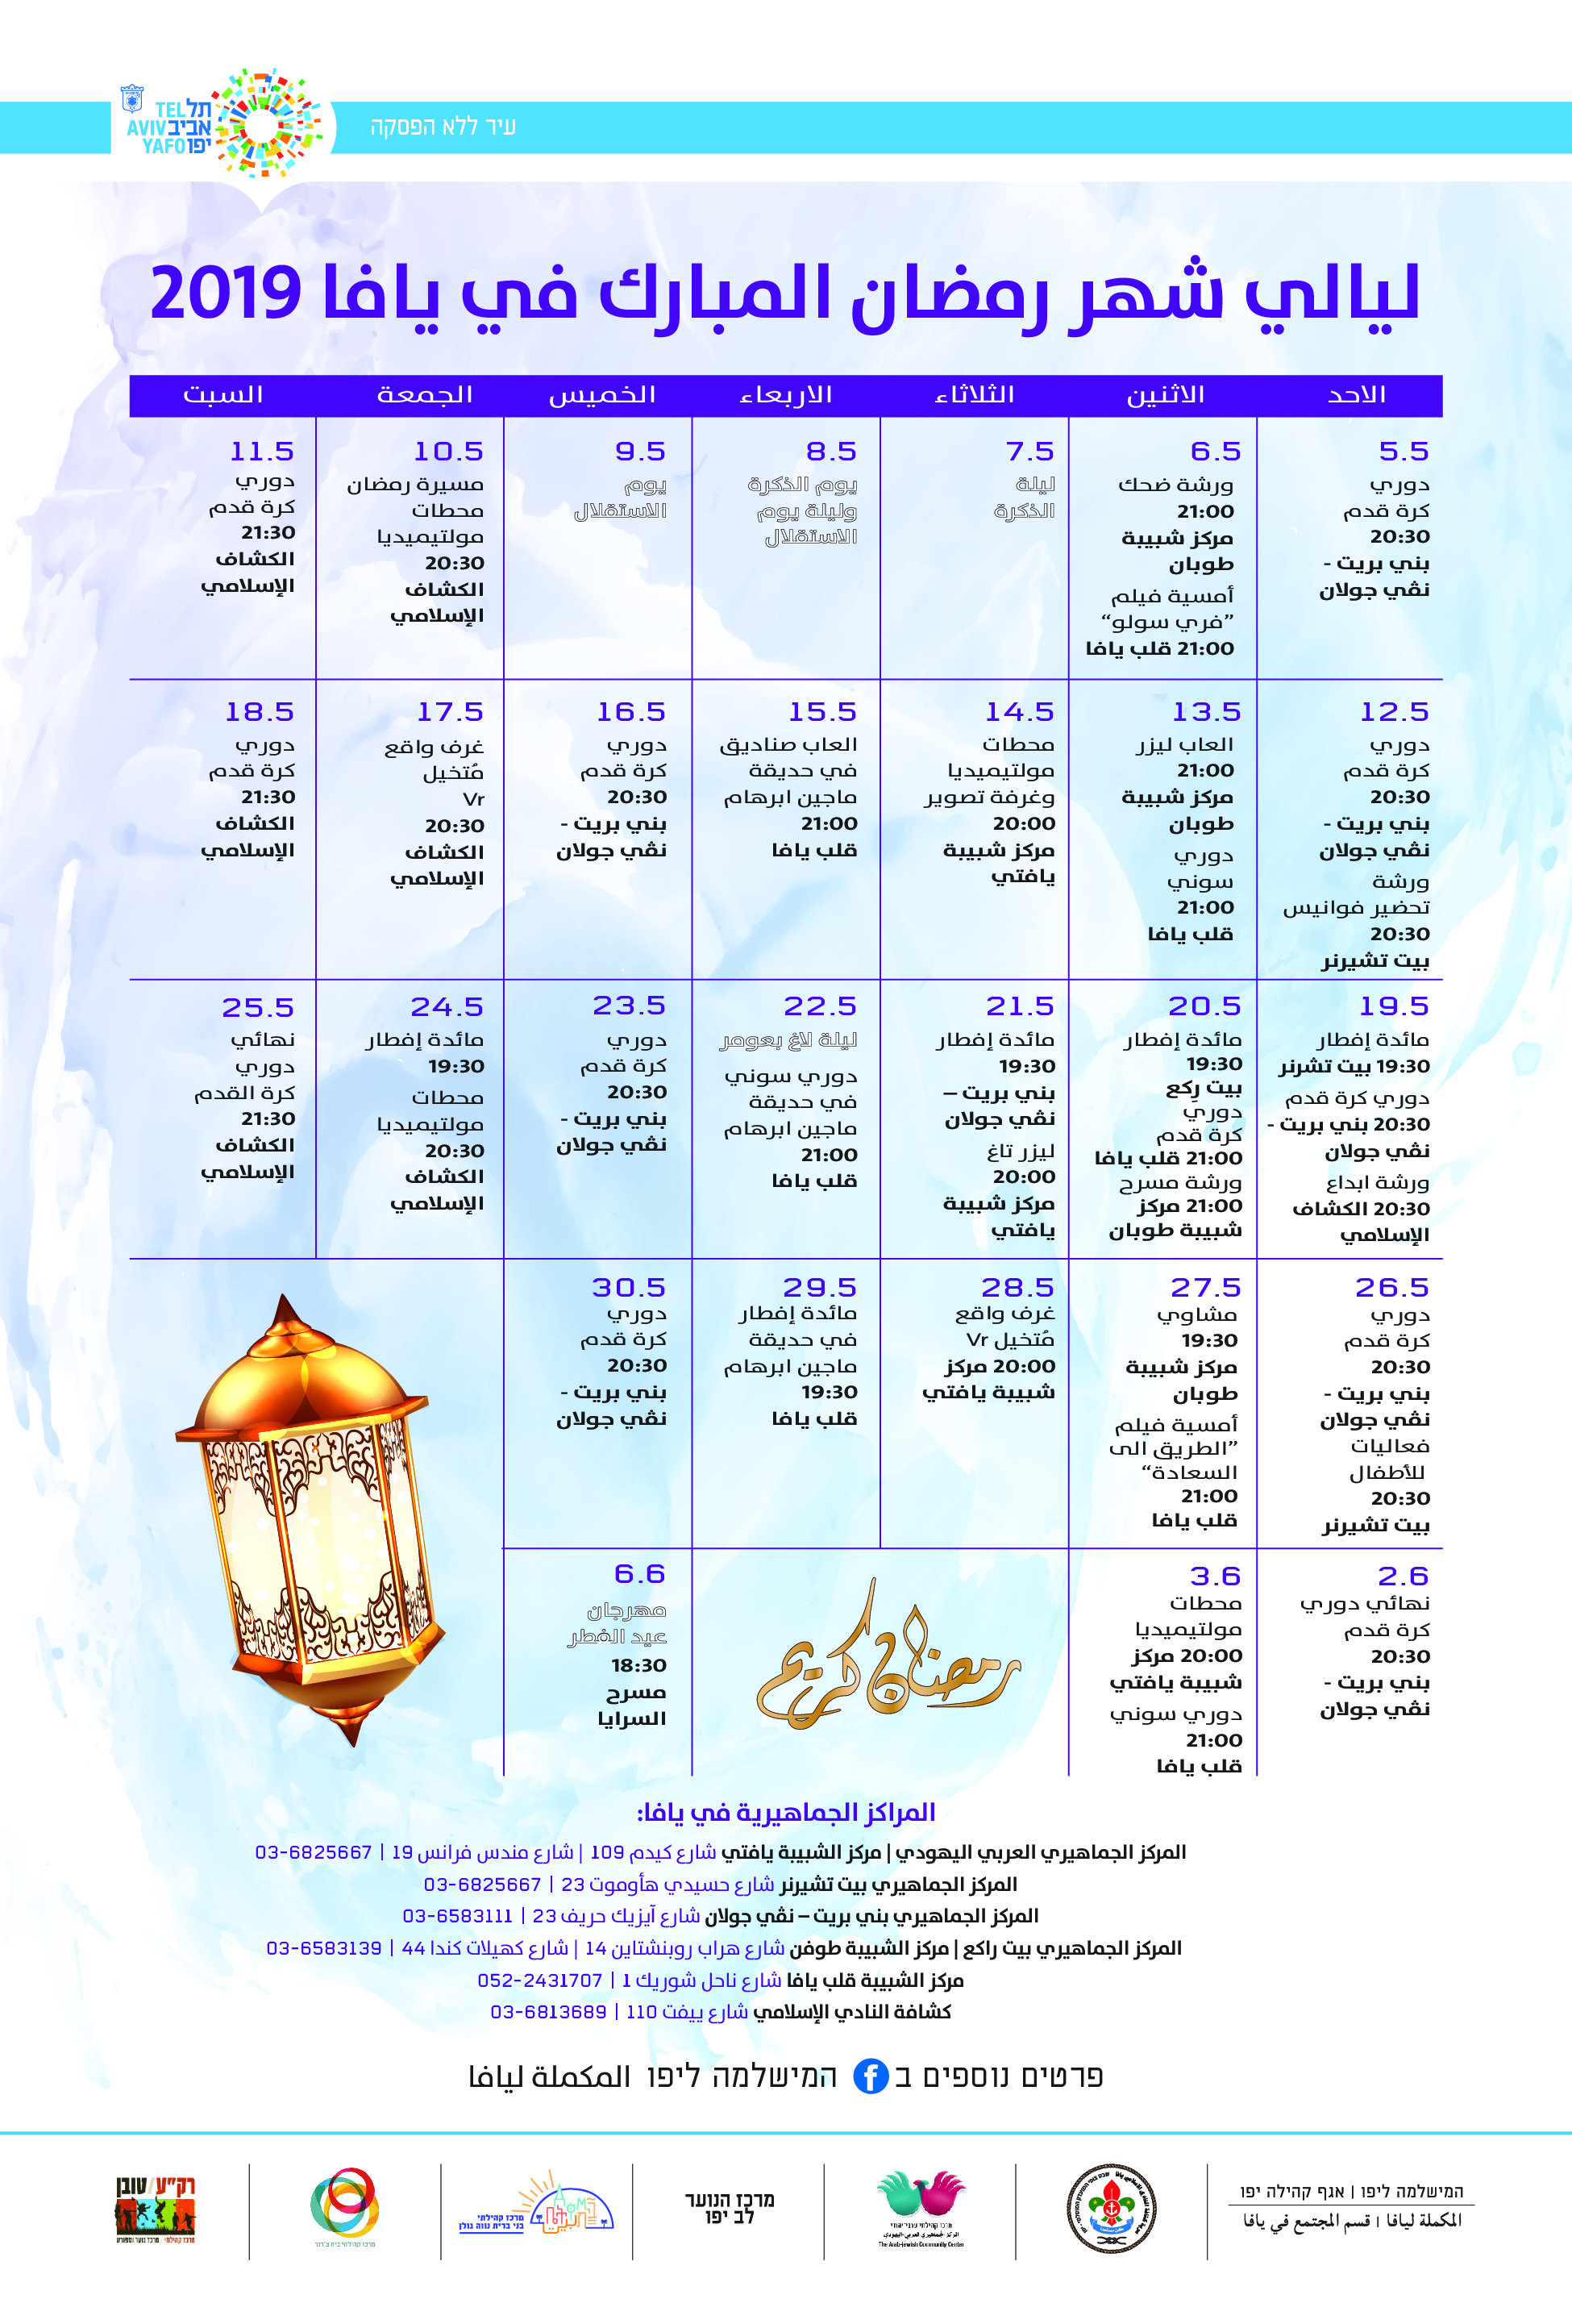 المكملة ليافا تُعلن عن سلسلة فعاليات ضمن ليالي شهر رمضان المبارك 